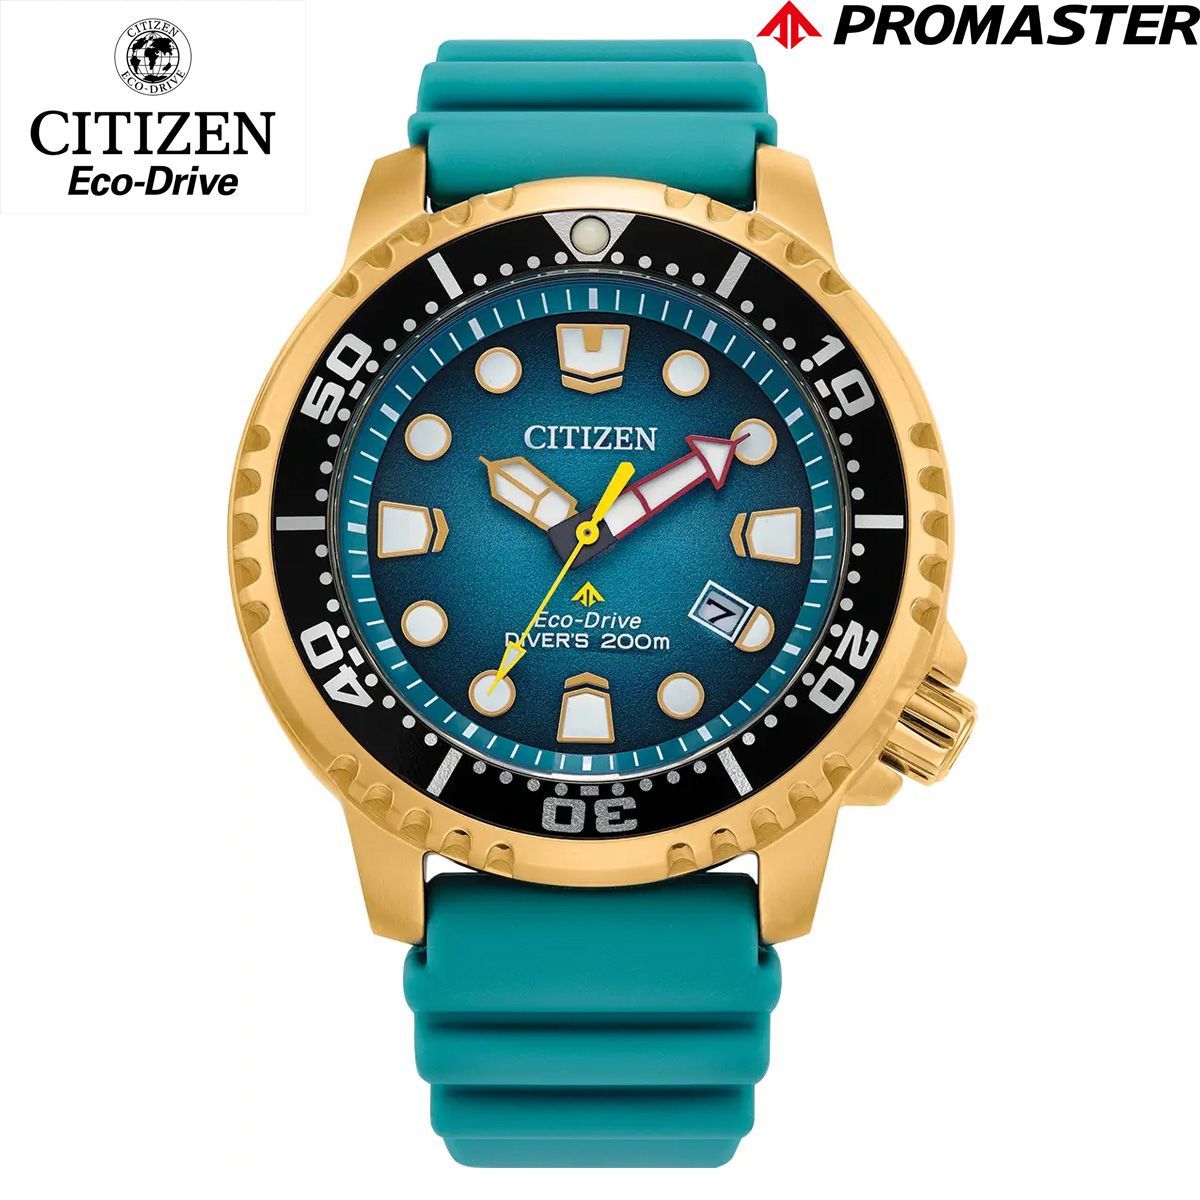 流通限定 CITIZEN シチズン メンズ 腕時計 BN0162-02X PROMASTER エコドライブ ECO-DRIVE ソーラー DIVER 200M プロマスター ダイバー アナログ カレンダー ターコイズブルー ゴールド ユニセックス レディース-0